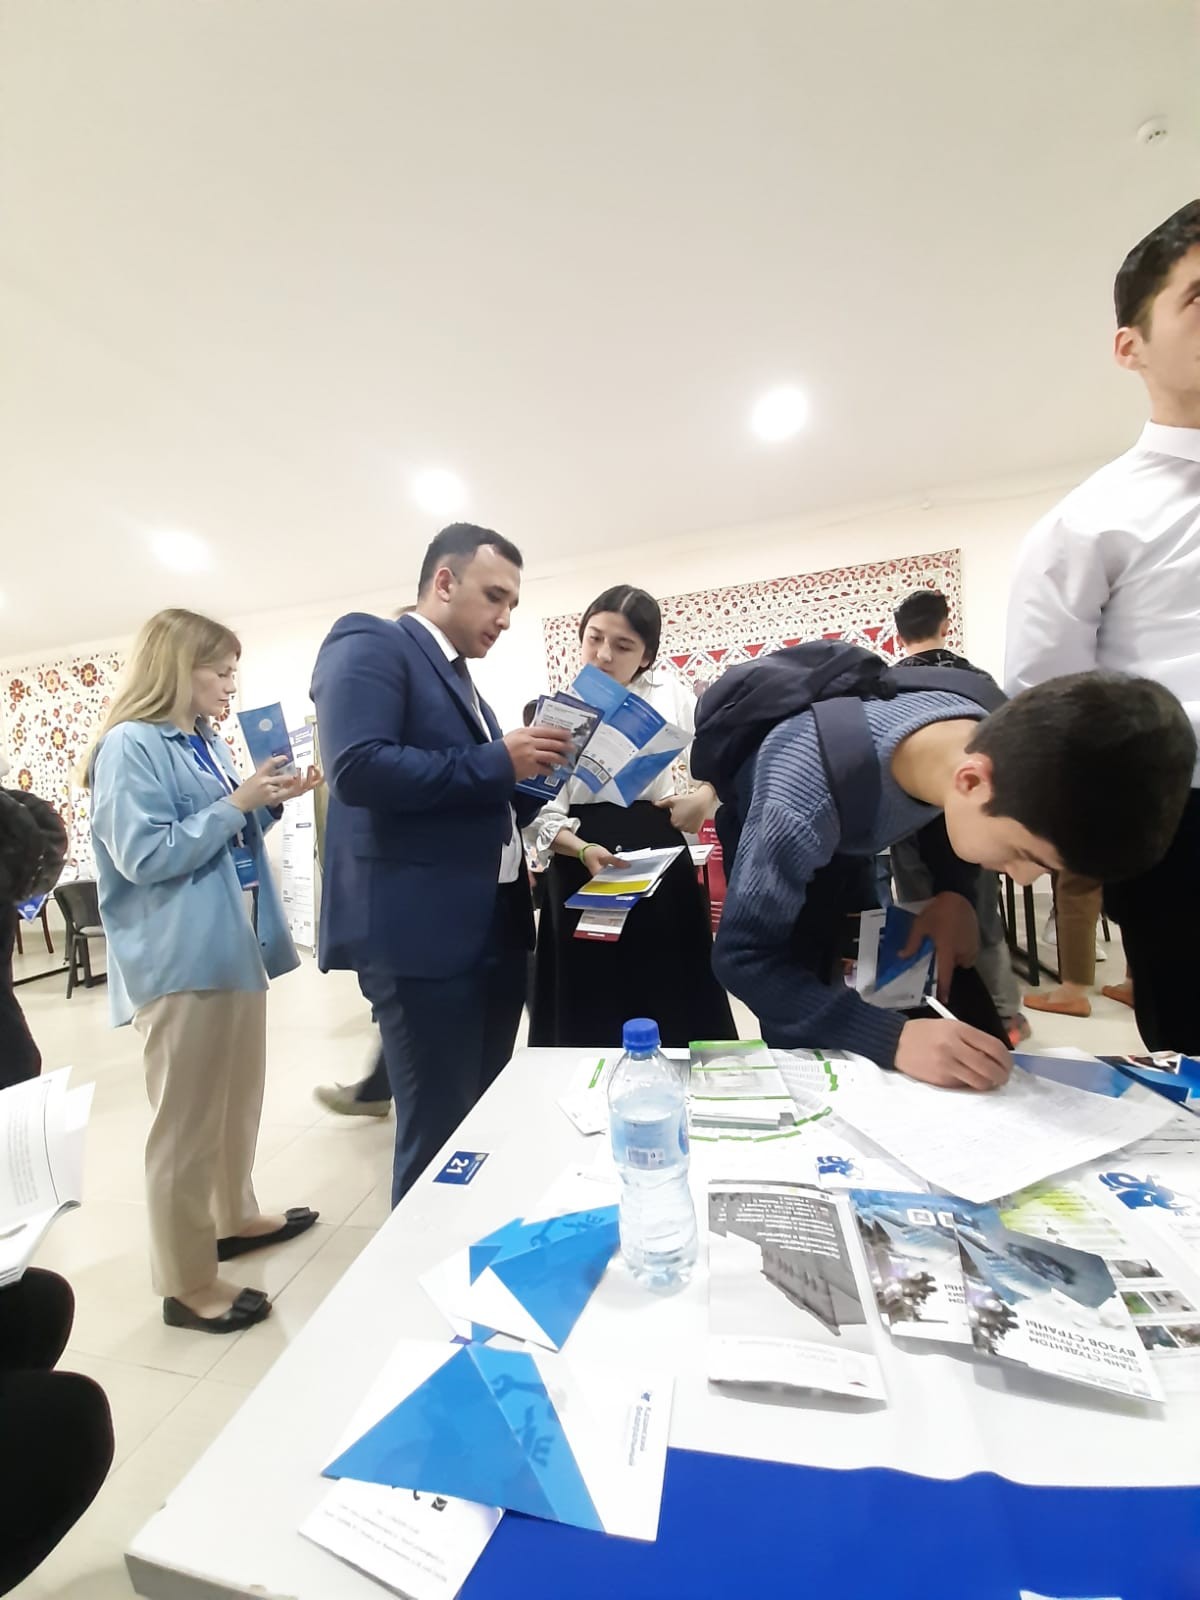 14 апреля дирекция Института физики приняла участие в заключительном дне ярмарки 'Образование и профессия' в городе Бухара Республики Узбекистан!